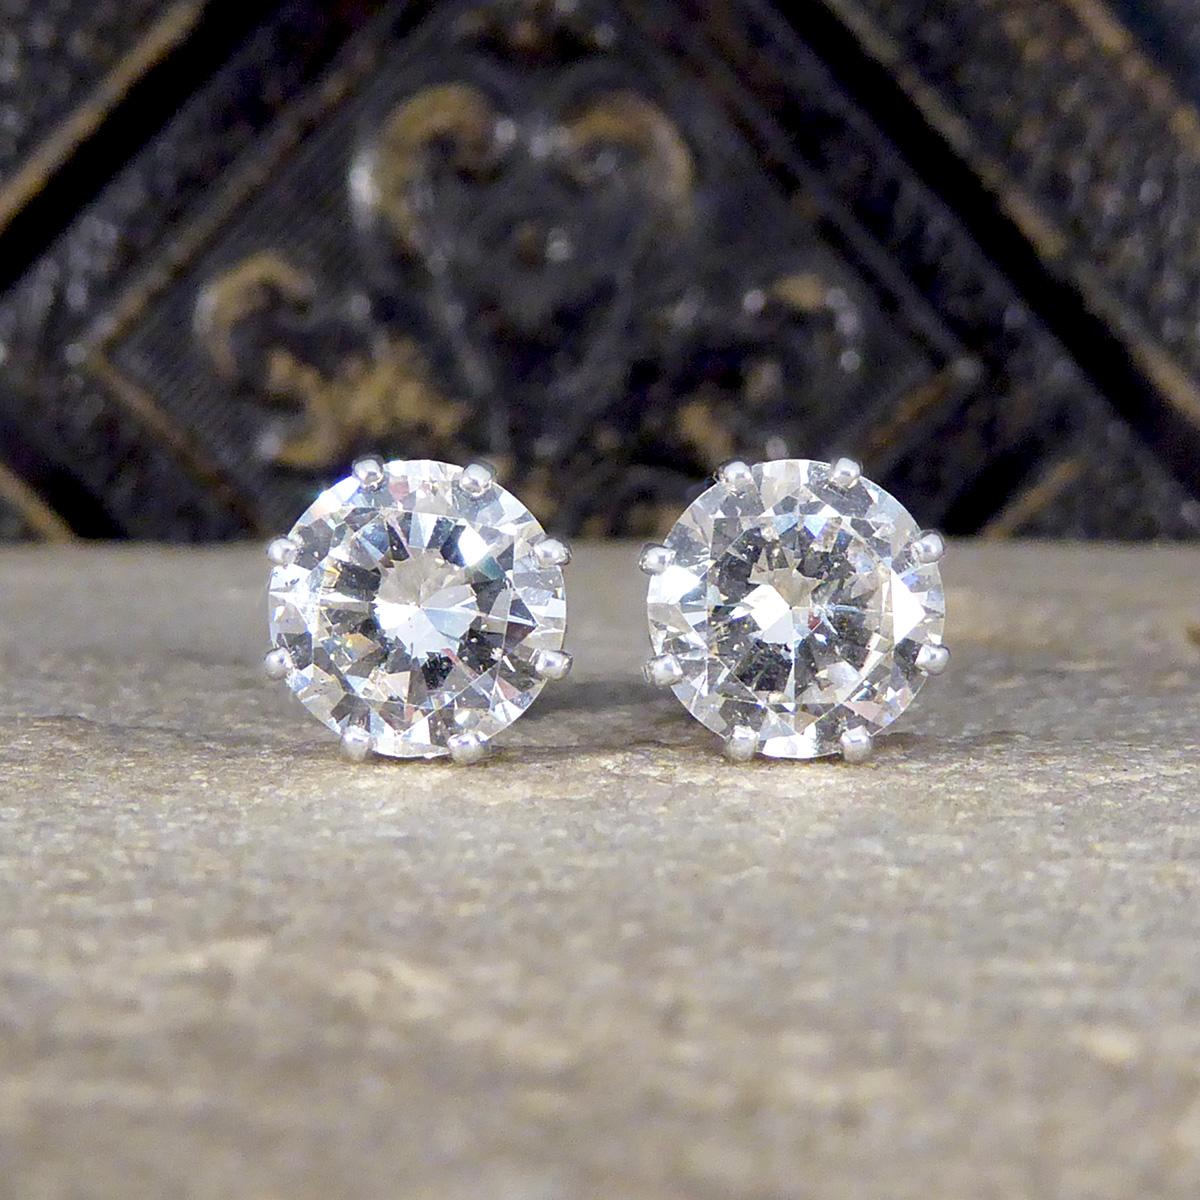 Das perfekte Paar großer Diamant-Ohrstecker. Jeder Ohrstecker ist mit einem runden Diamanten im Brillantschliff besetzt, der in Farbe und Reinheit gut zusammenpasst und insgesamt 3.82ct wiegt. Die Diamanten haben jeweils einen Anchor Cert Diamant